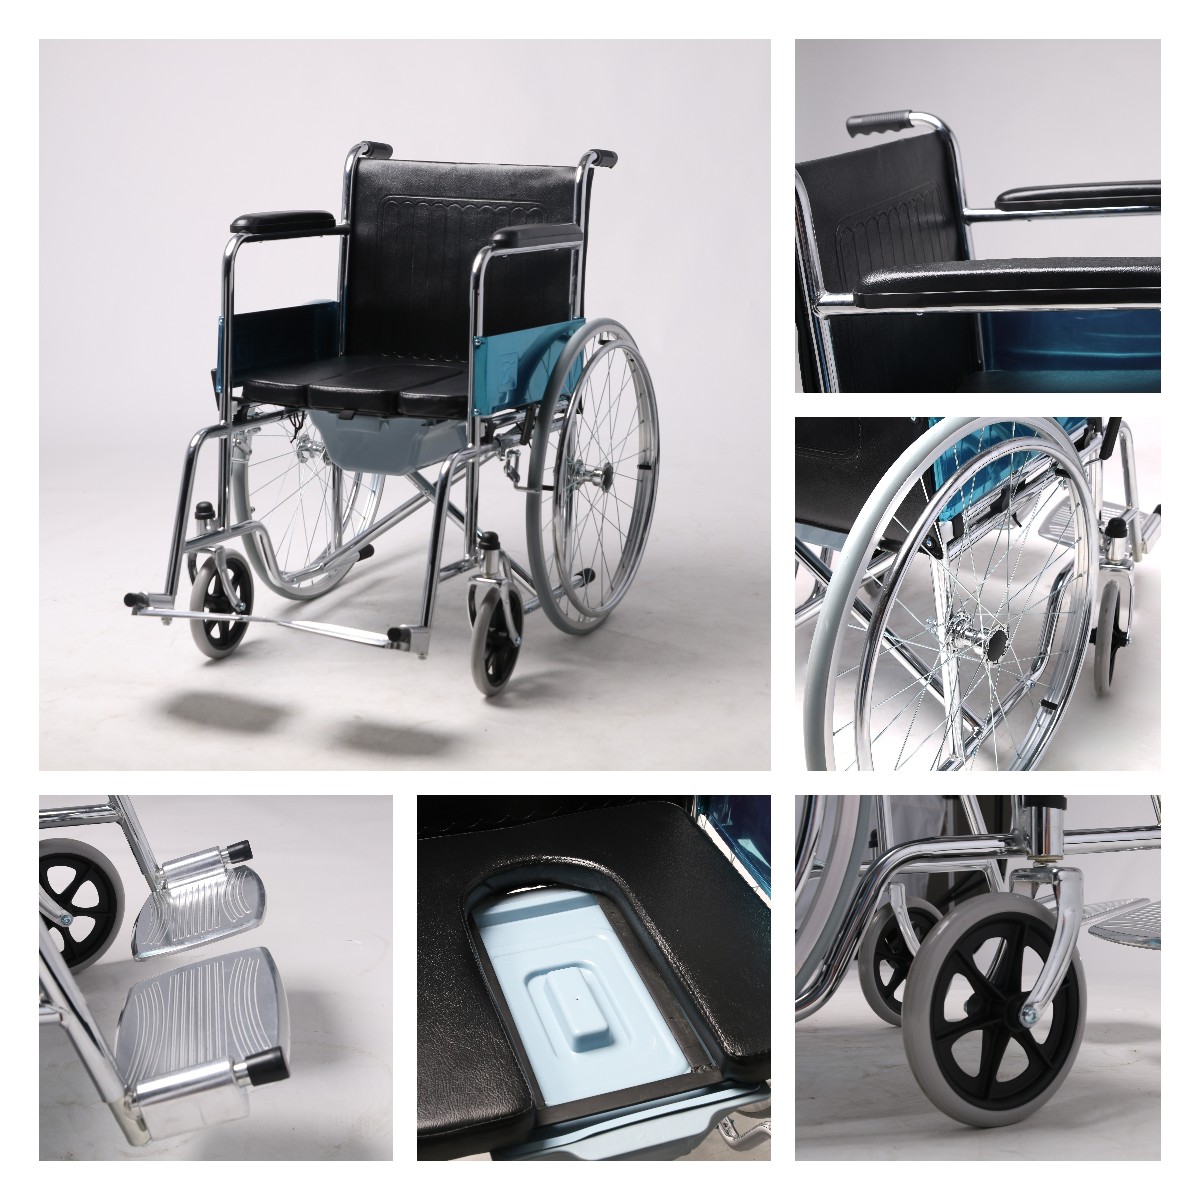 Steel Folding Frame Commode Wheelchair For Senior